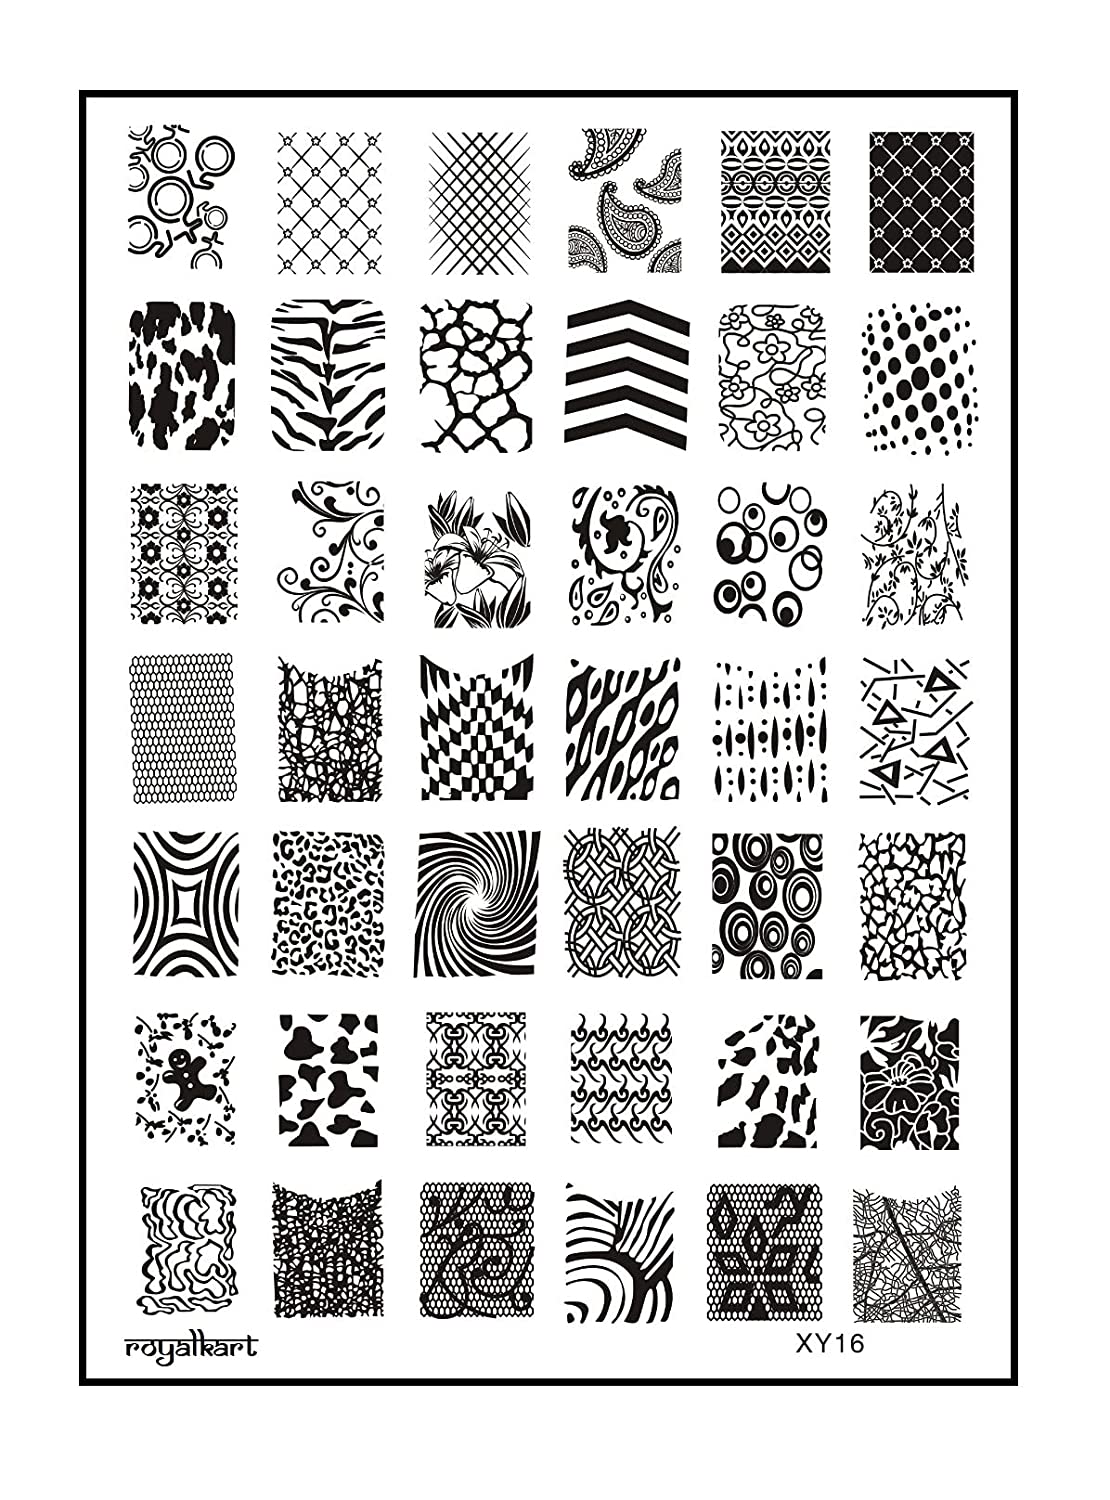 Nail Art Combo Kit Stamping Image Plates (to93xy16strp) Nail Art Combo- Royalkart - The Urban Store